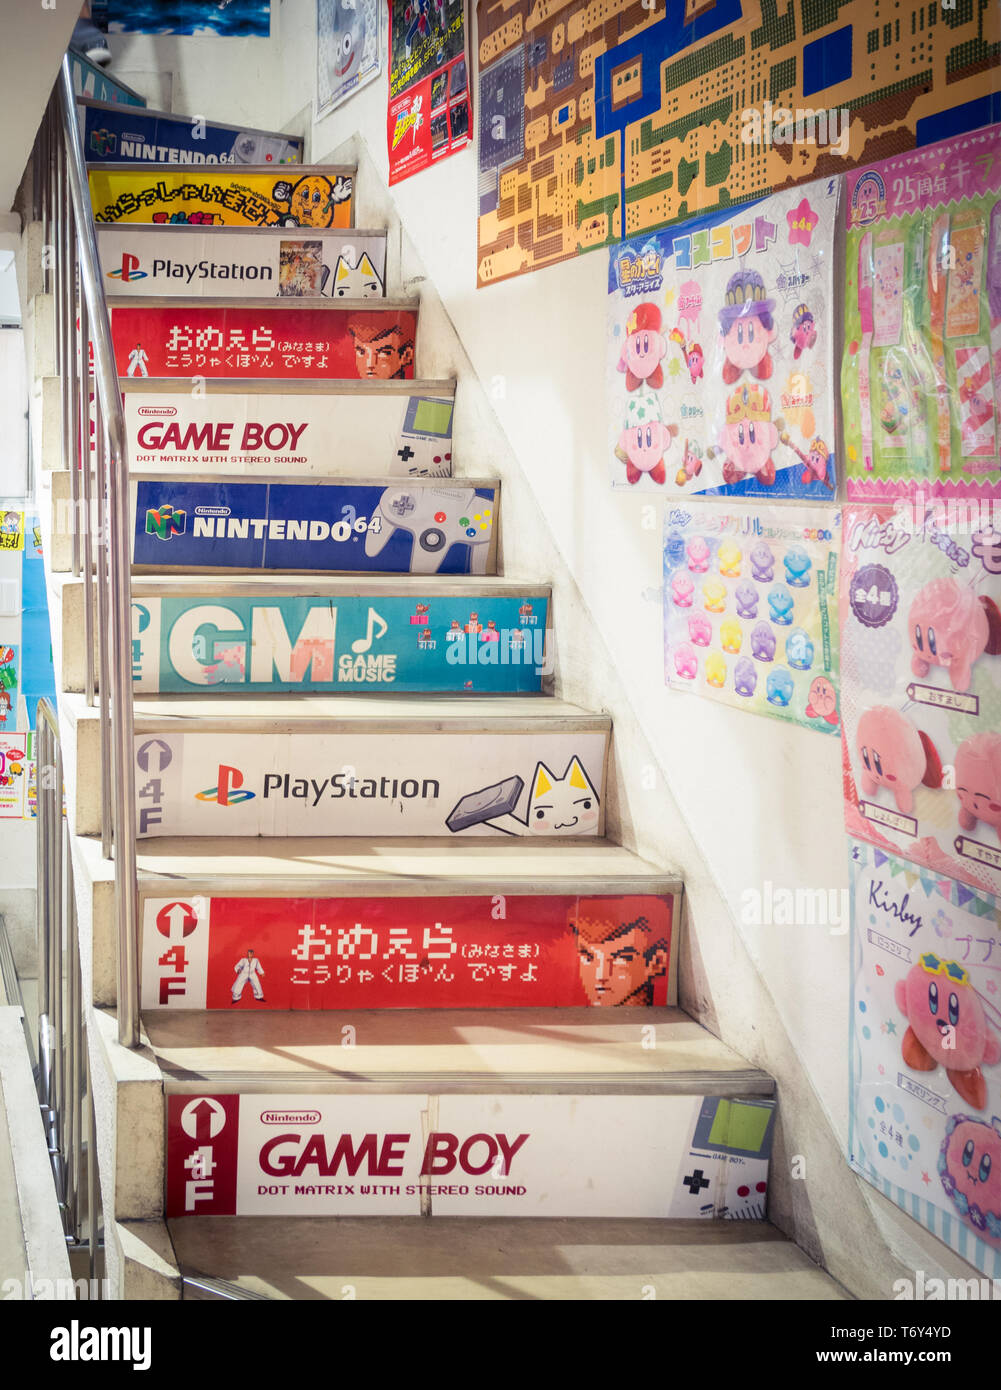 Jusqu'à l'escalier le célèbre magasin de jeu vidéo rétro, Super Potato Retro-kan, situé dans le quartier de Akihabara Electric Town, Tokyo, Japon. Banque D'Images